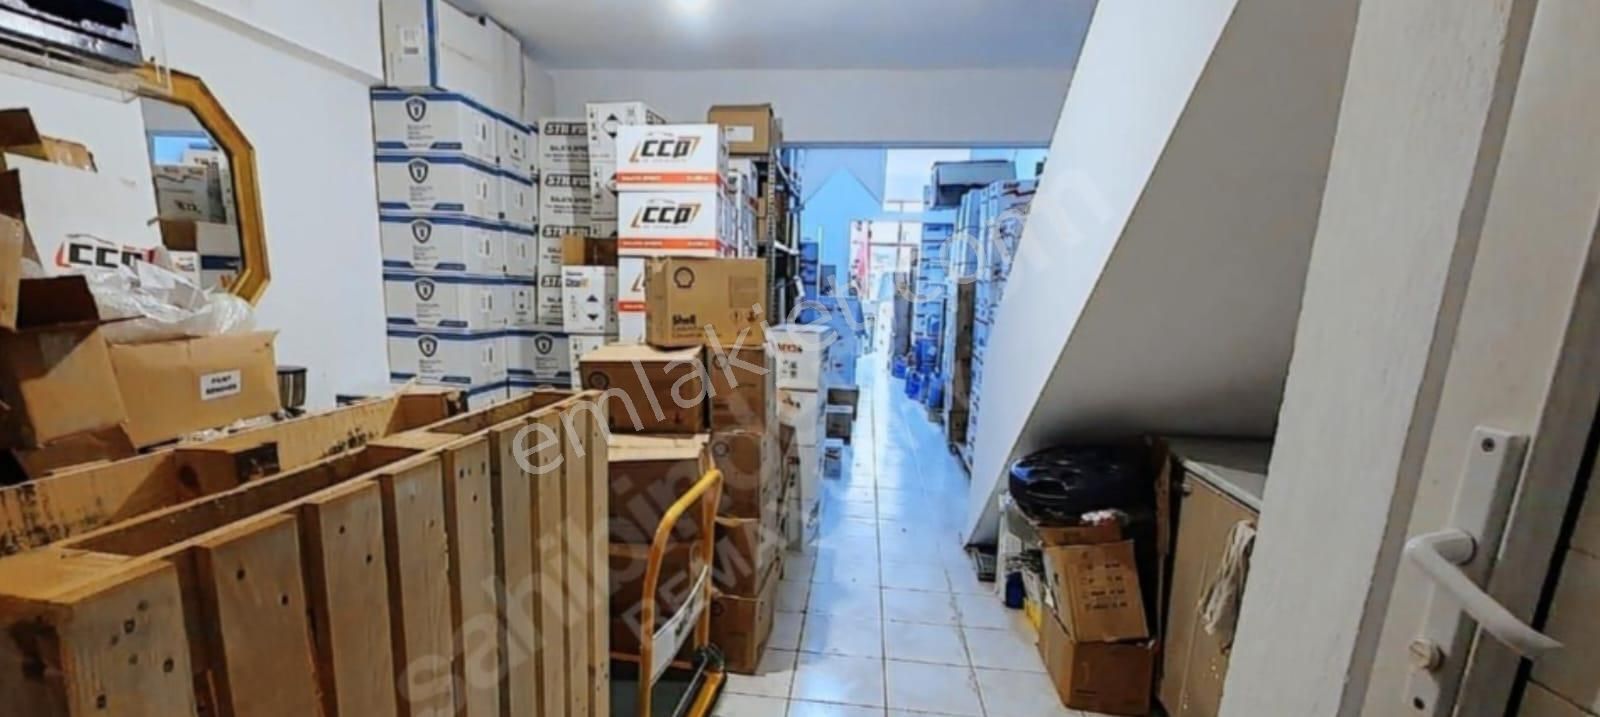 Odunpazarı Sultandere 75. Yıl Satılık Dükkan & Mağaza  HG-113 TEKSAN SANAYİ SİTESİ ÇARŞI GRUBUNDA SATILIK İŞ YERİ